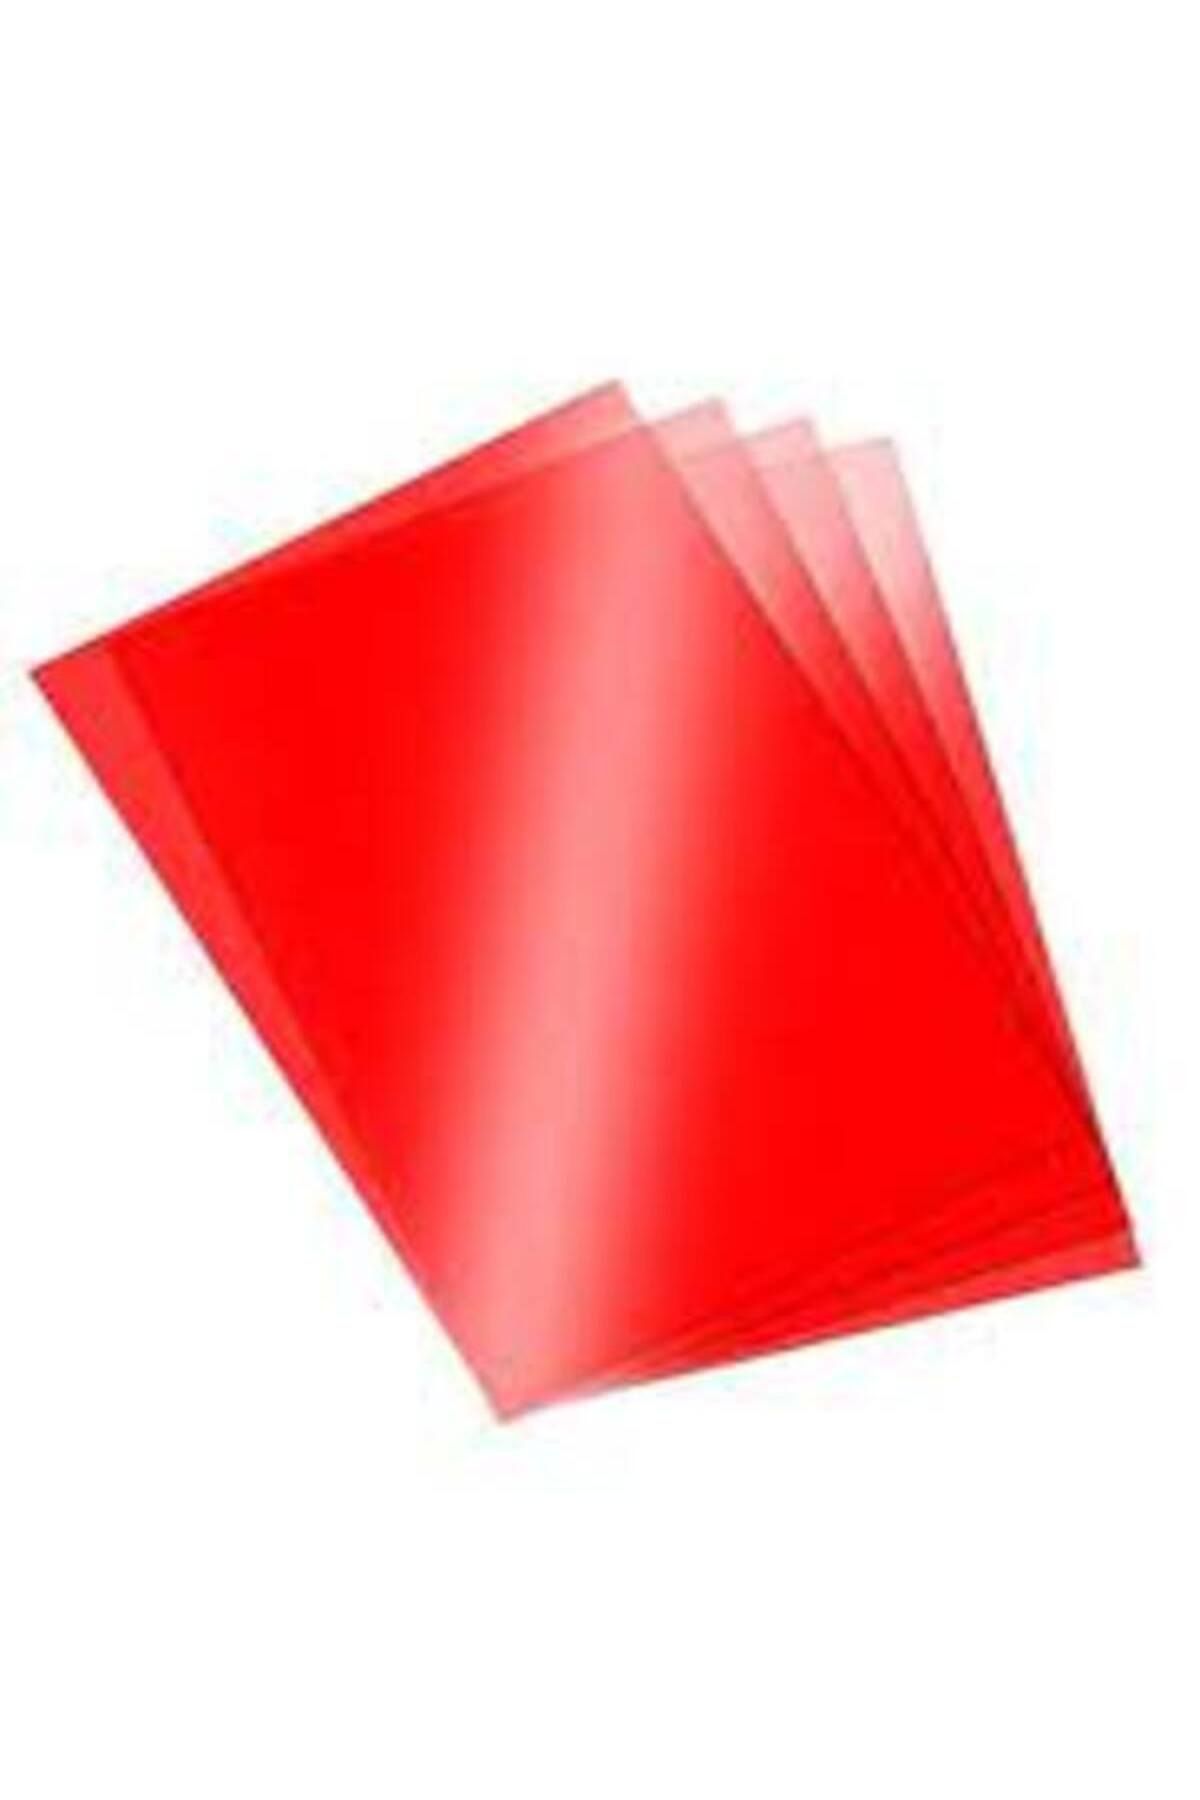 Yerli Asetat Kağıdı 5'li Şeffaf Kırmızı